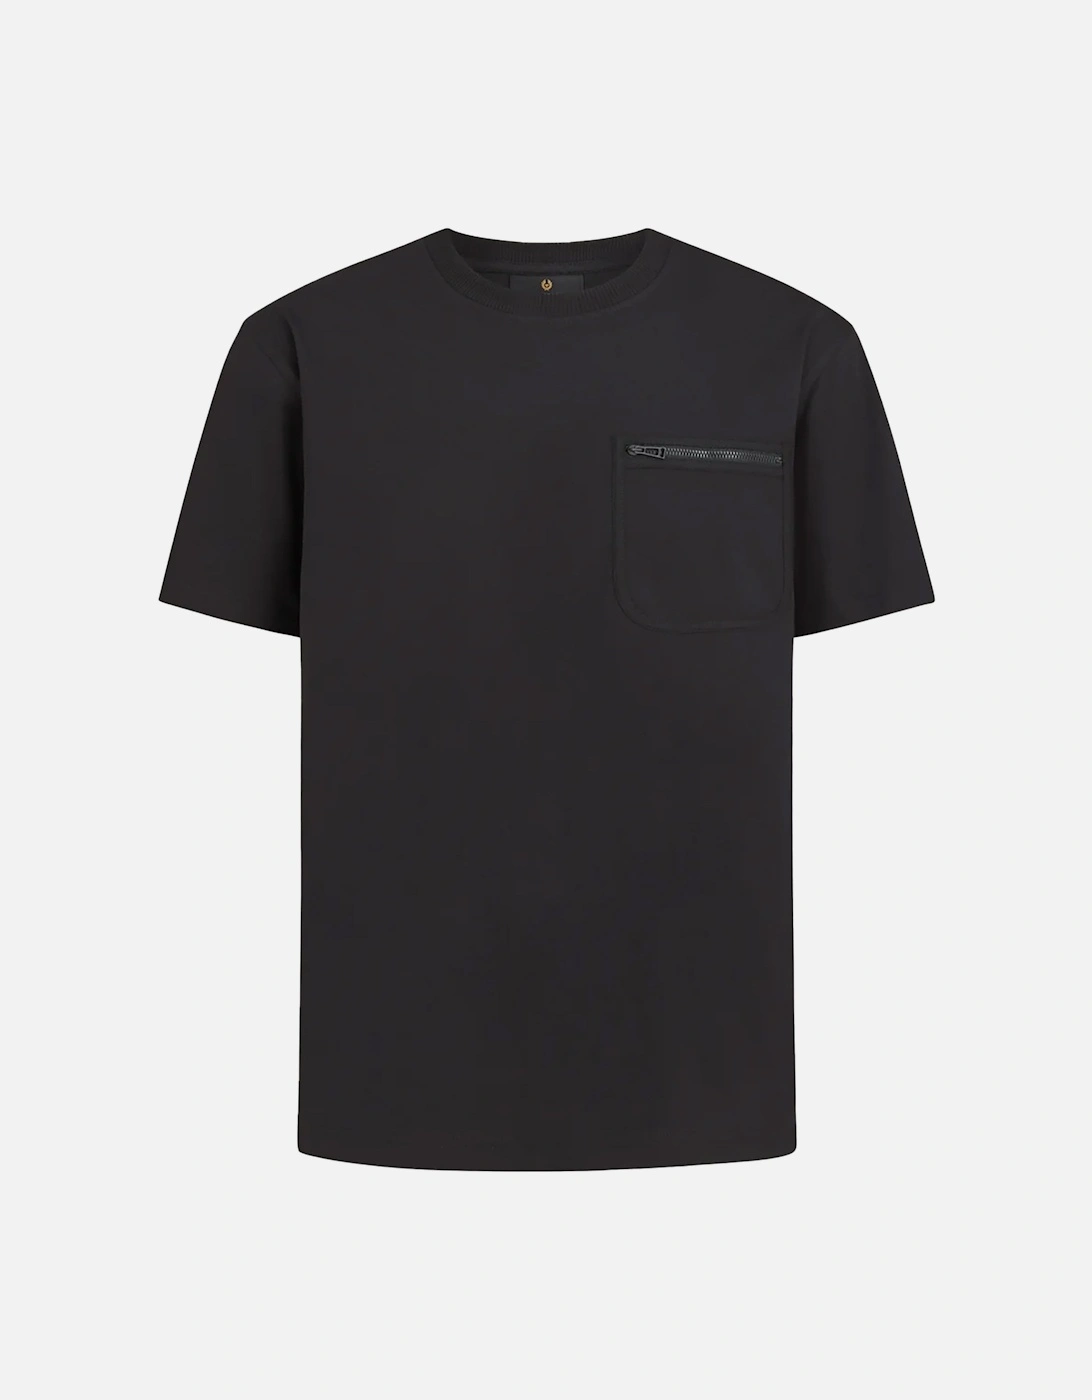 Transit T-shirt Black, 6 of 5